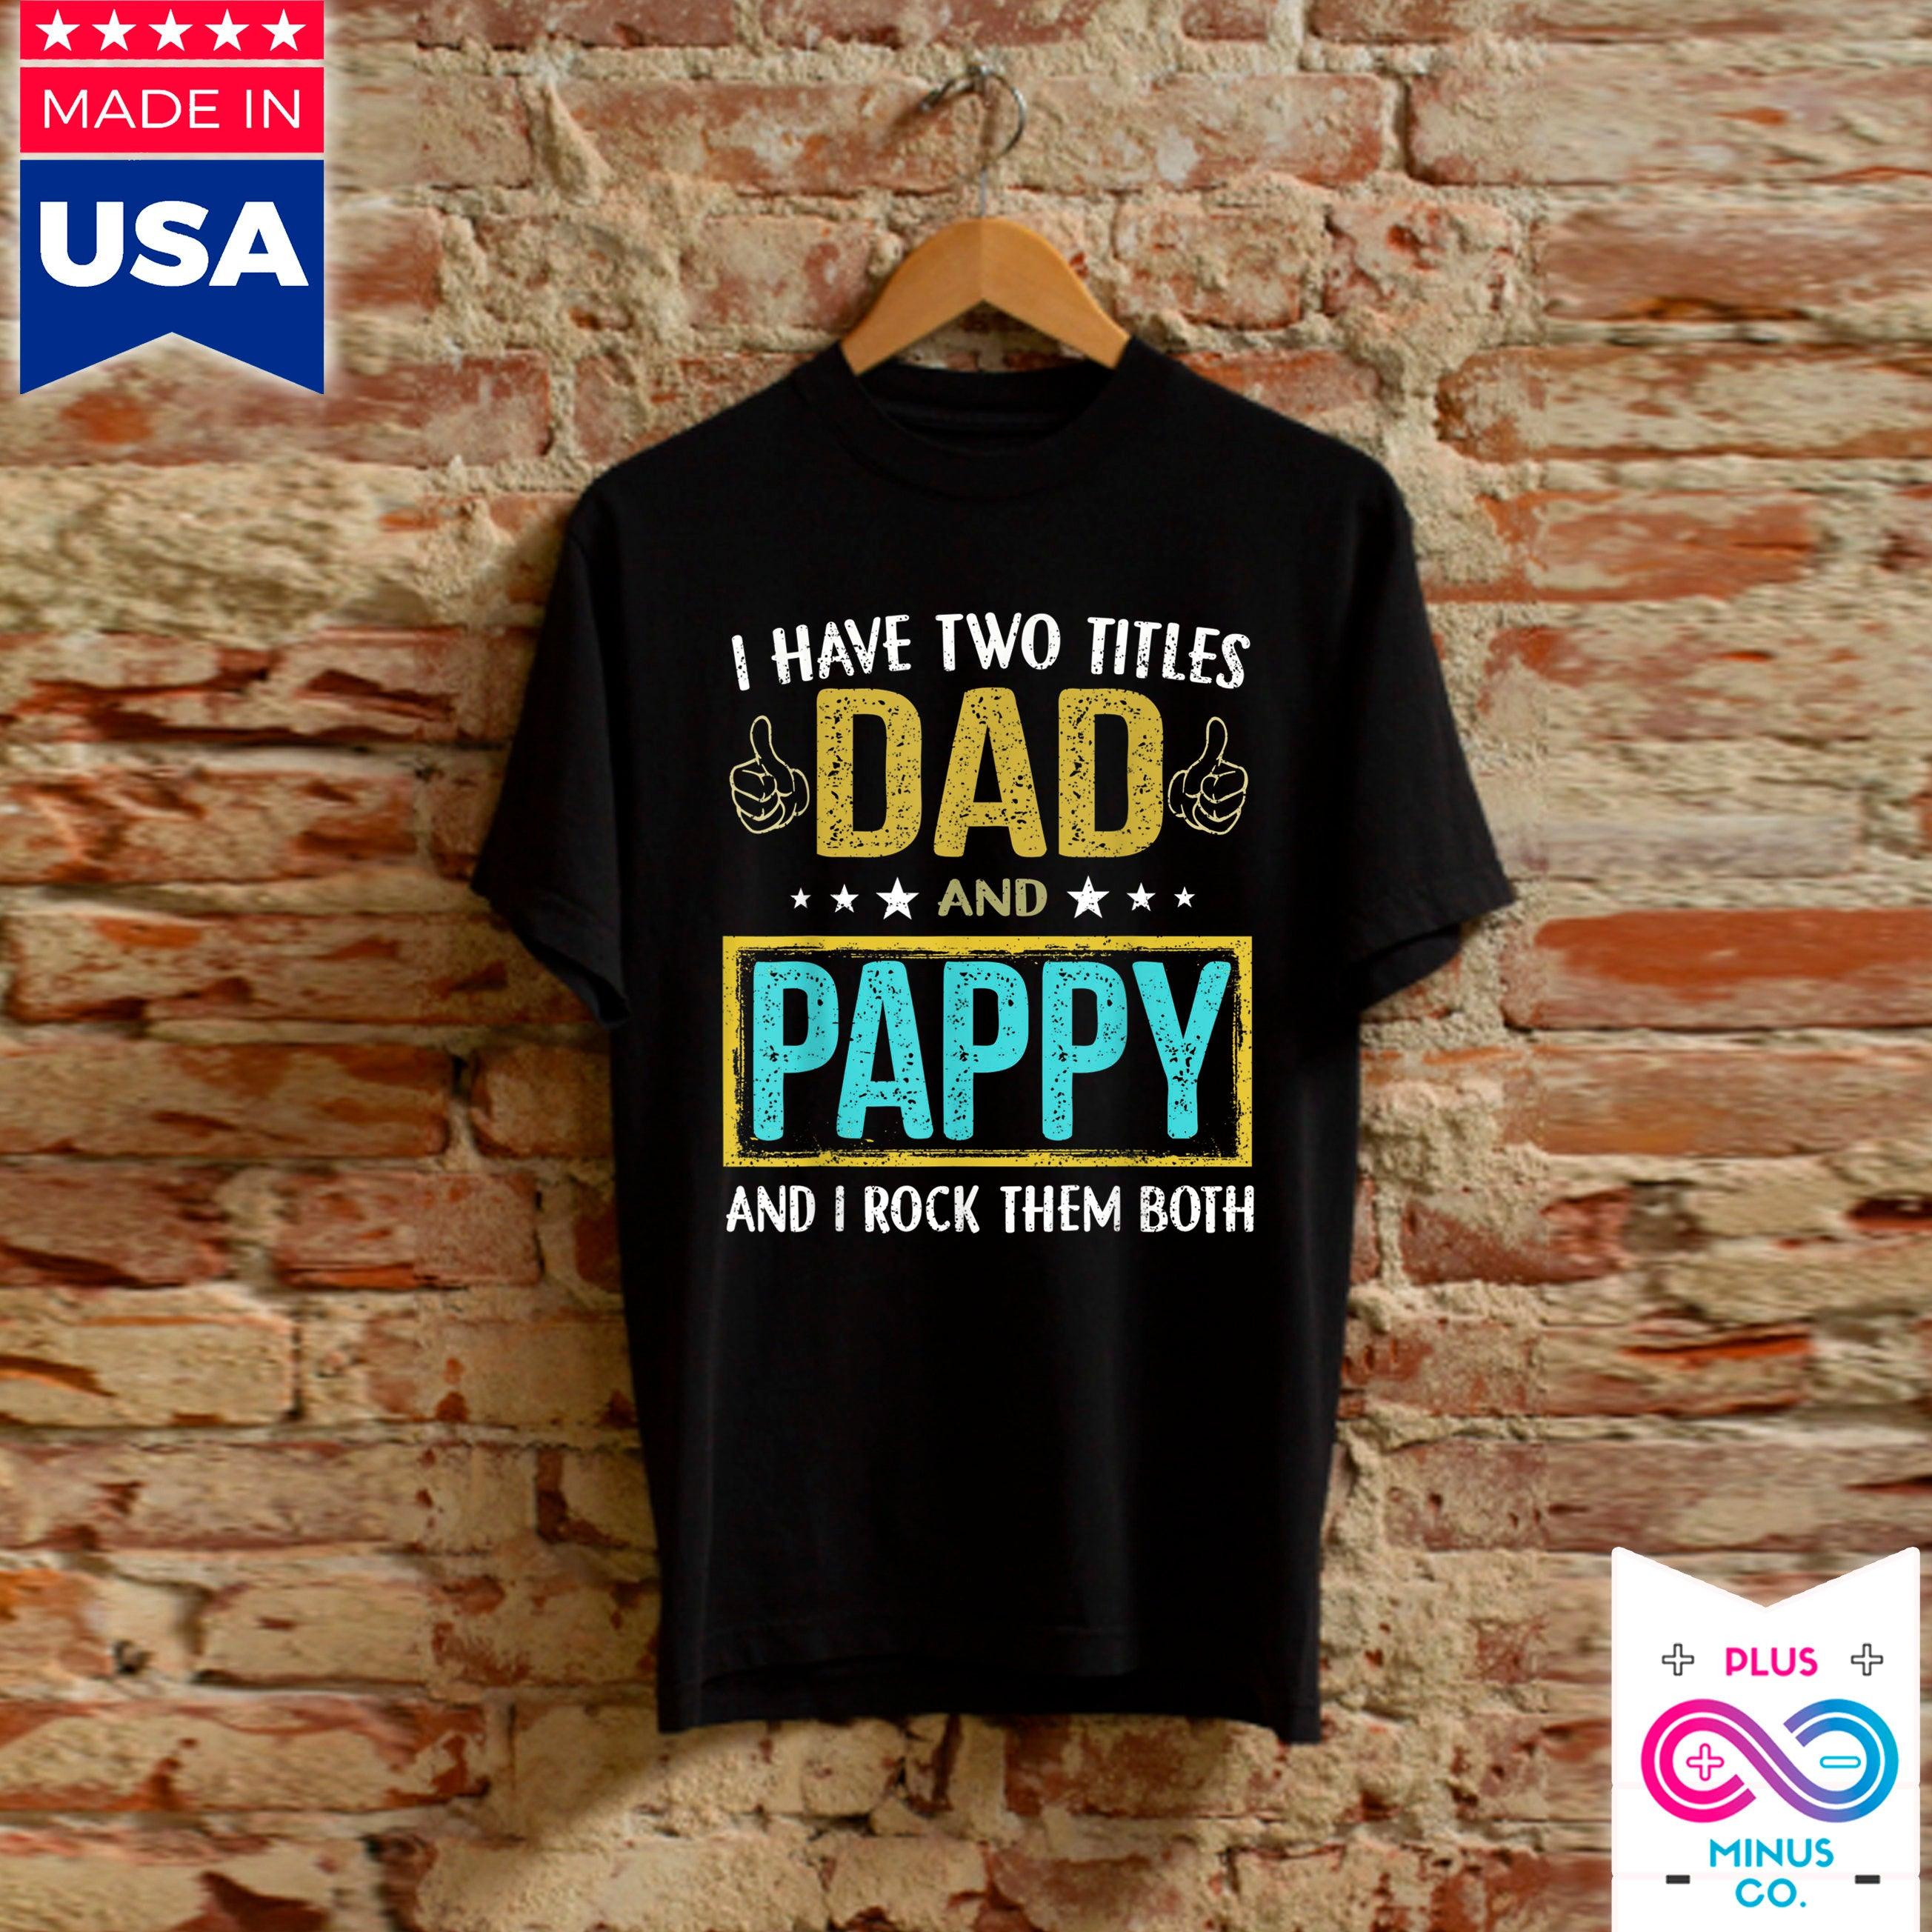 Erkek İki Başlığım Var Babam ve Pappy - Babaya Hediye Tişörtler,kızdan babaya hediyeler, babalar günü hediyesi,oğuldan babaya hediyeler - plusminusco.com